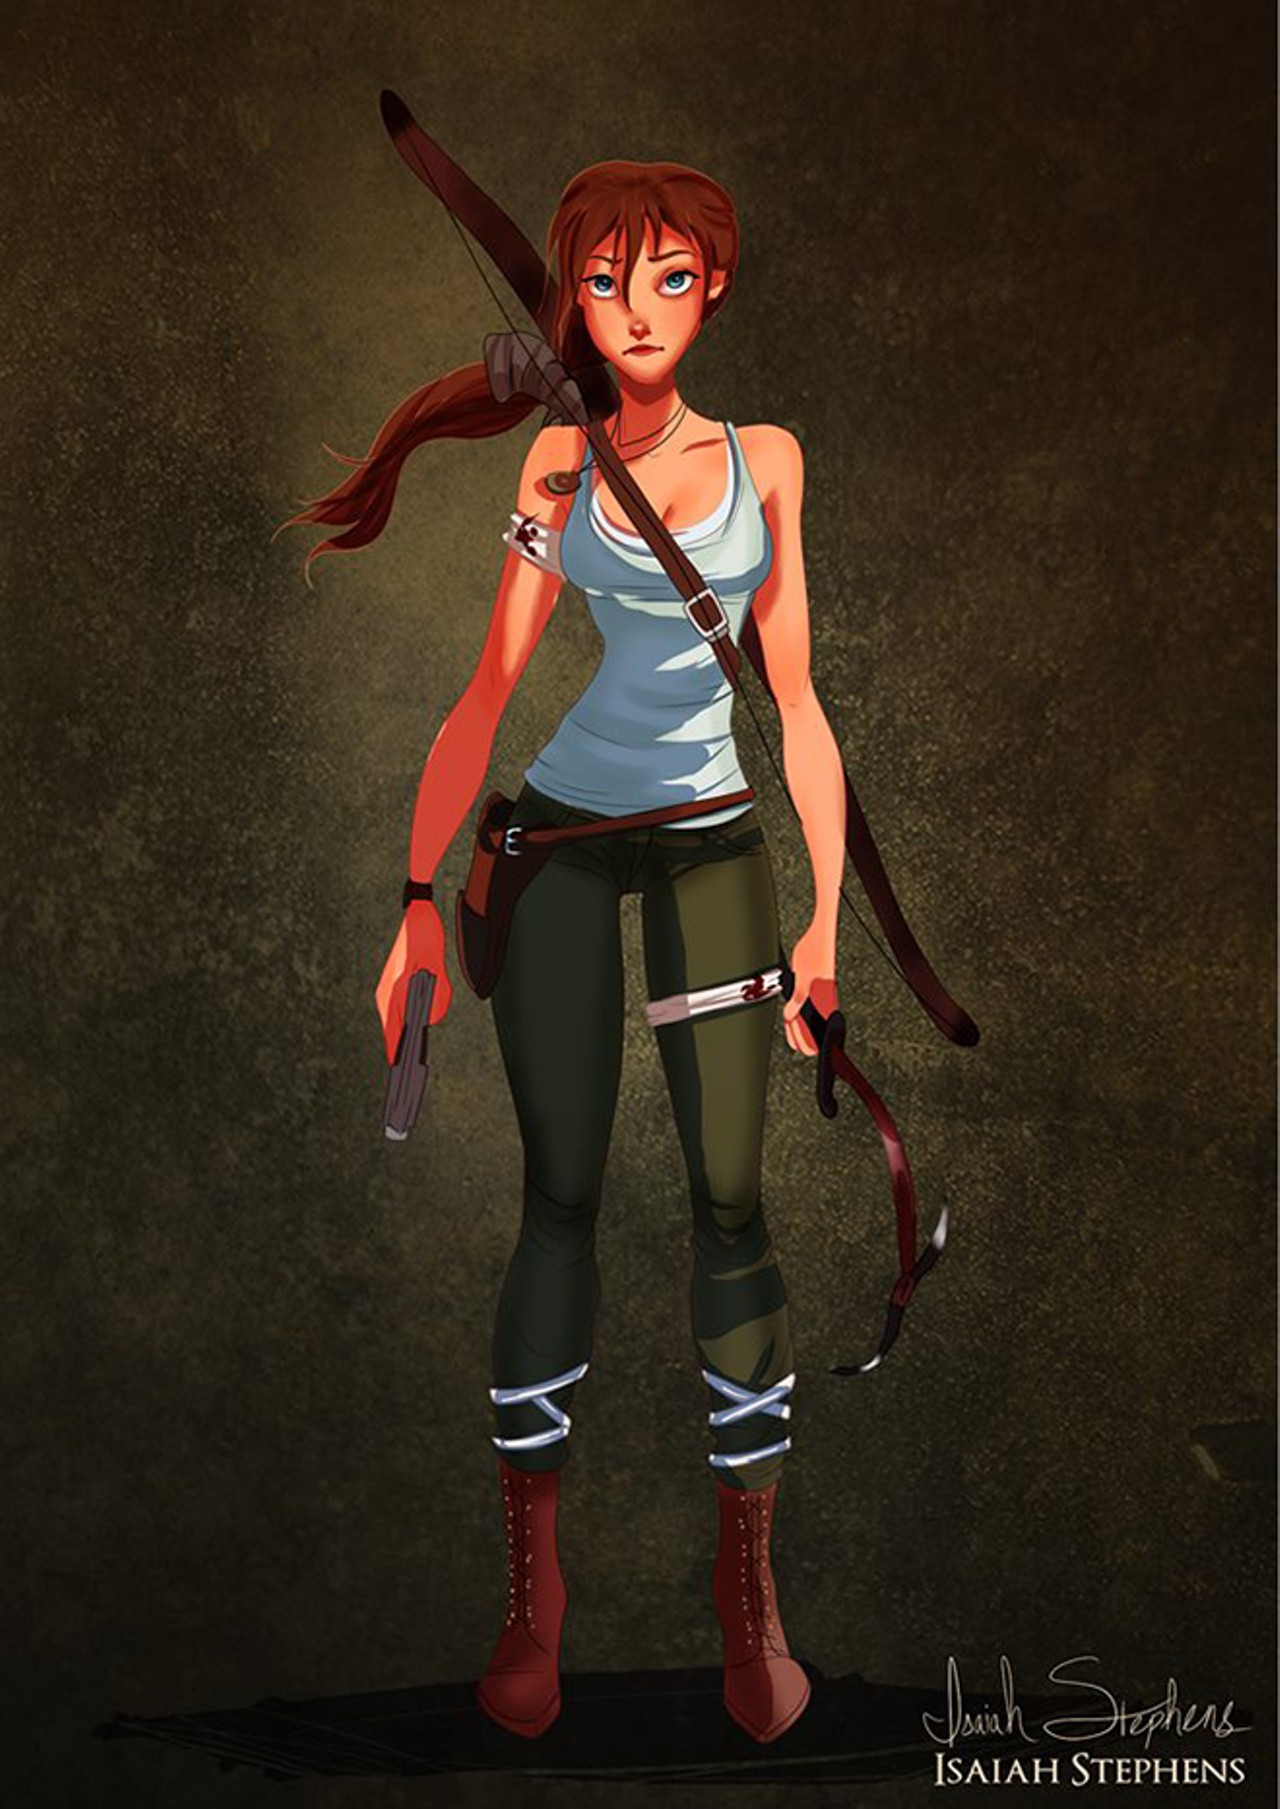 Jane as Lara Croft